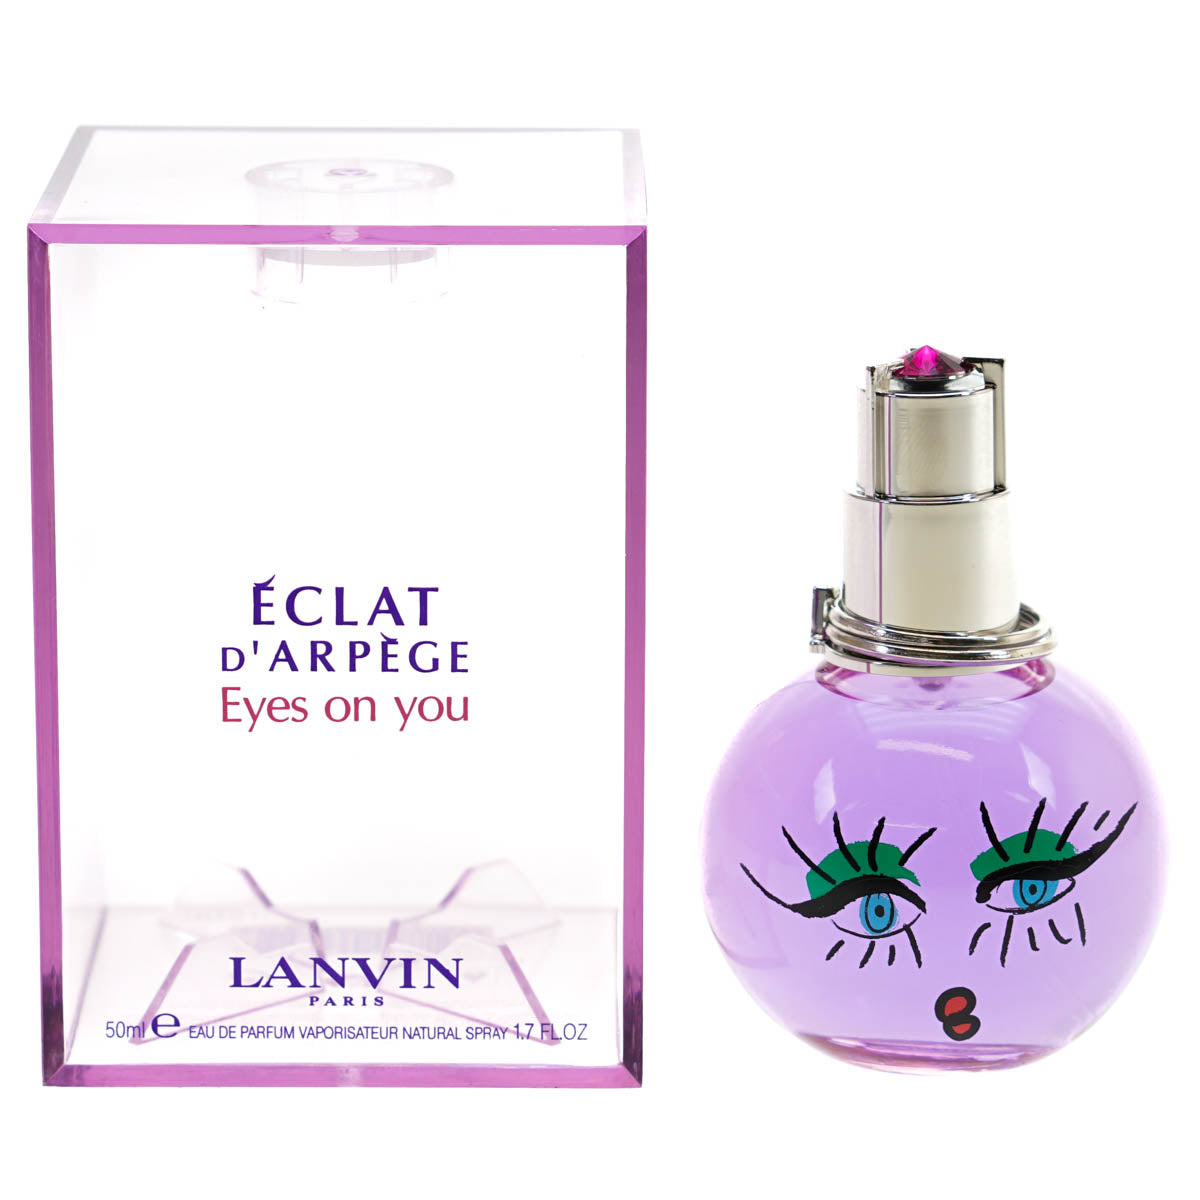 Lanvin Eclat D'Arpege Eyes On You 50ml Eau De Parfum